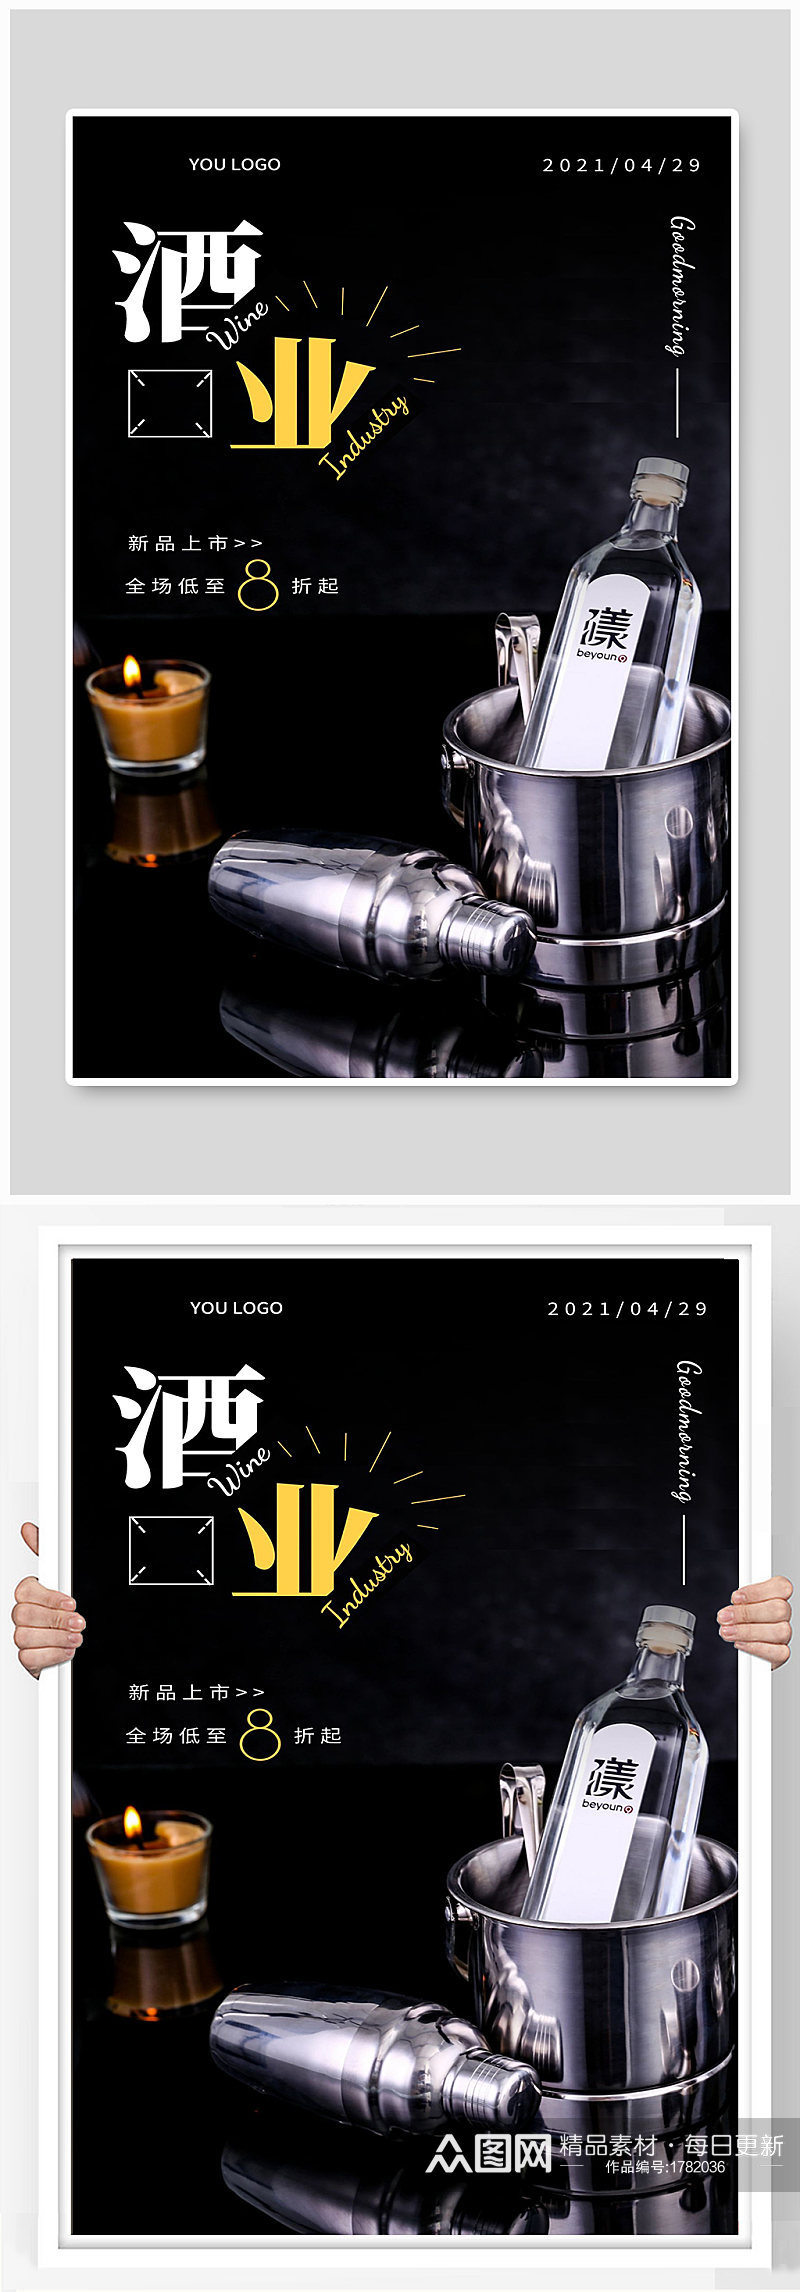 白酒酒业宣传海报设计制作素材